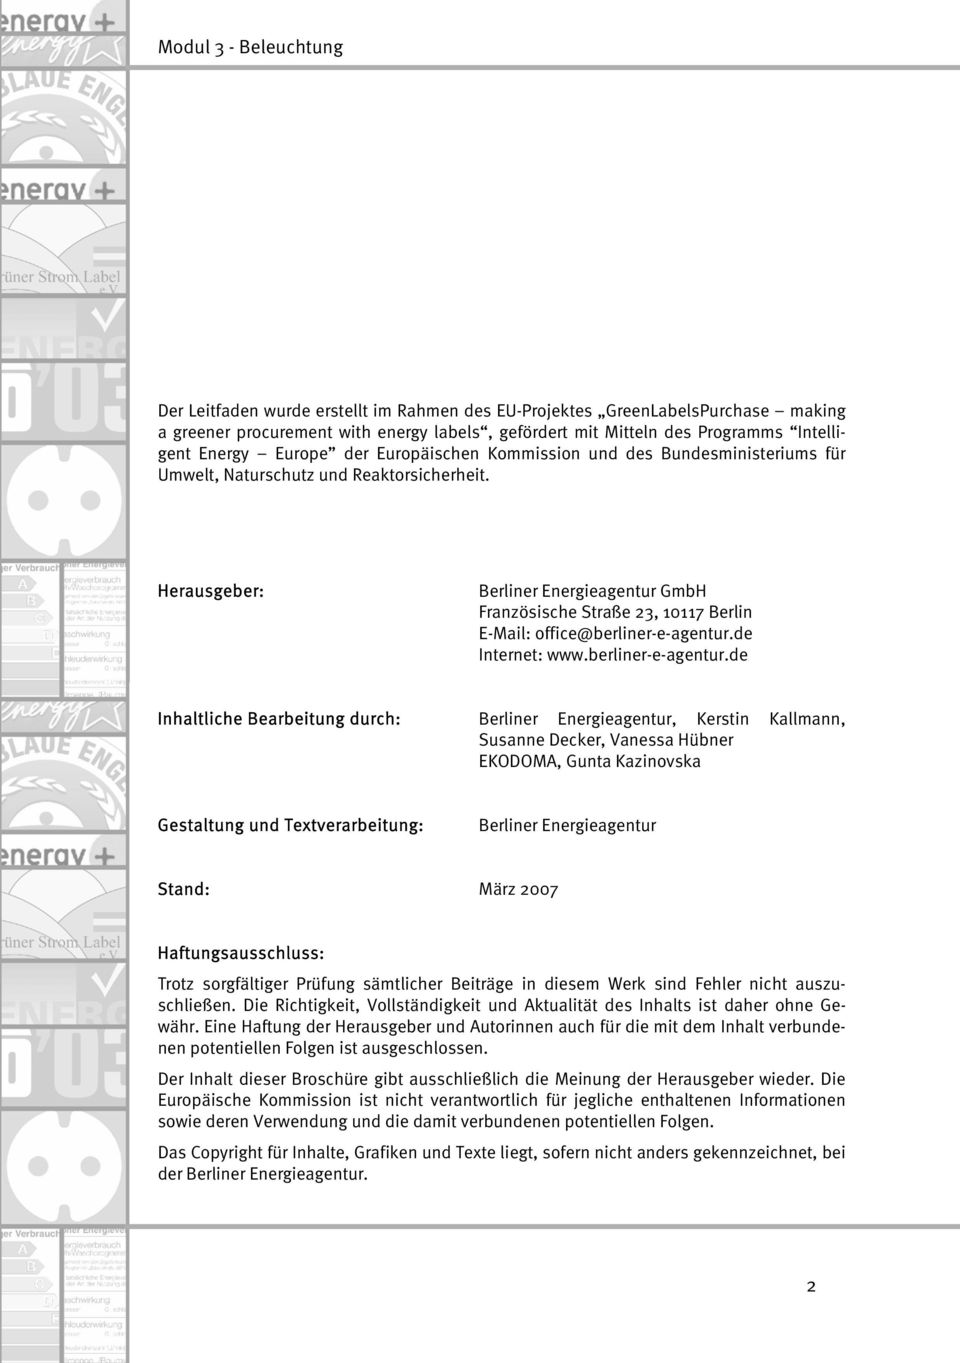 Herausgeber: Berliner Energieagentur GmbH Französische Straße 23, 10117 Berlin E-Mail: office@berliner-e-agentur.